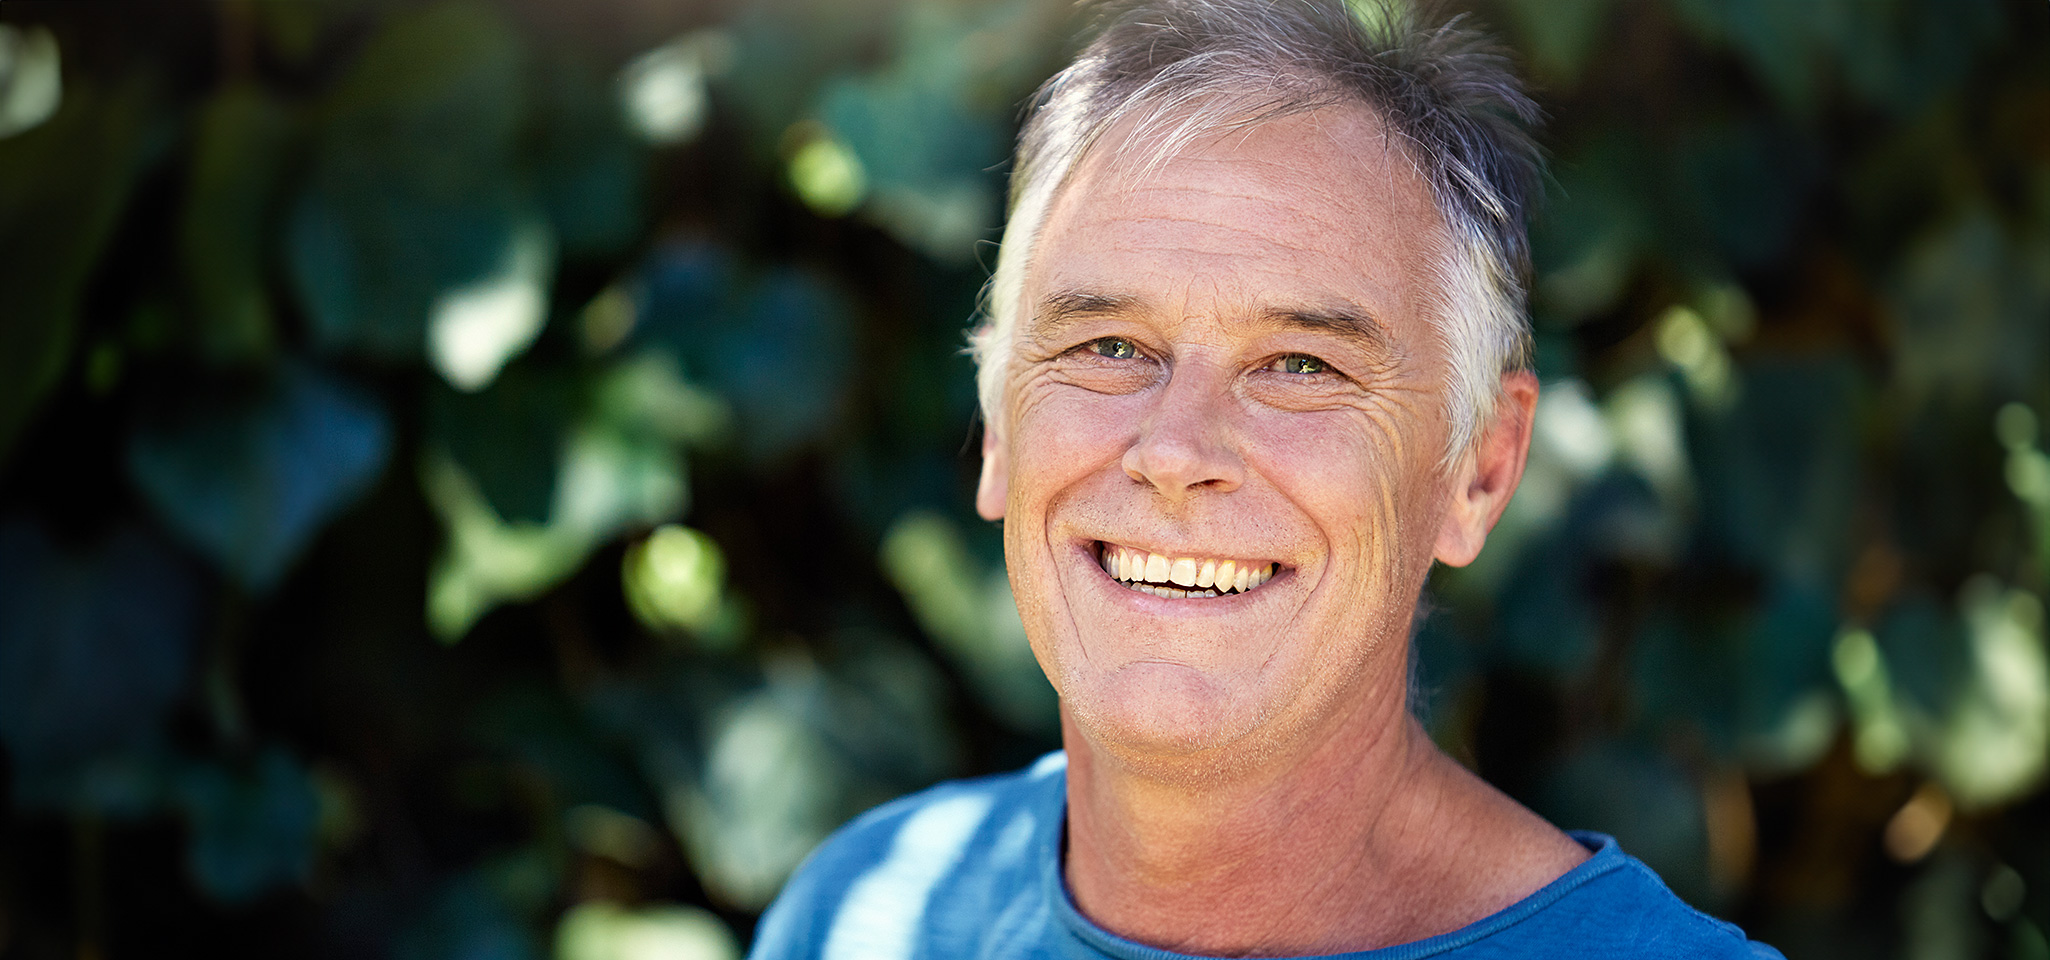 Brustbild eines etwa 60-jährigen Mannes, der freundlich lächelt. Dabei zeigen sich deutlich Mimikfalten auf den Wangen und um die Augen.